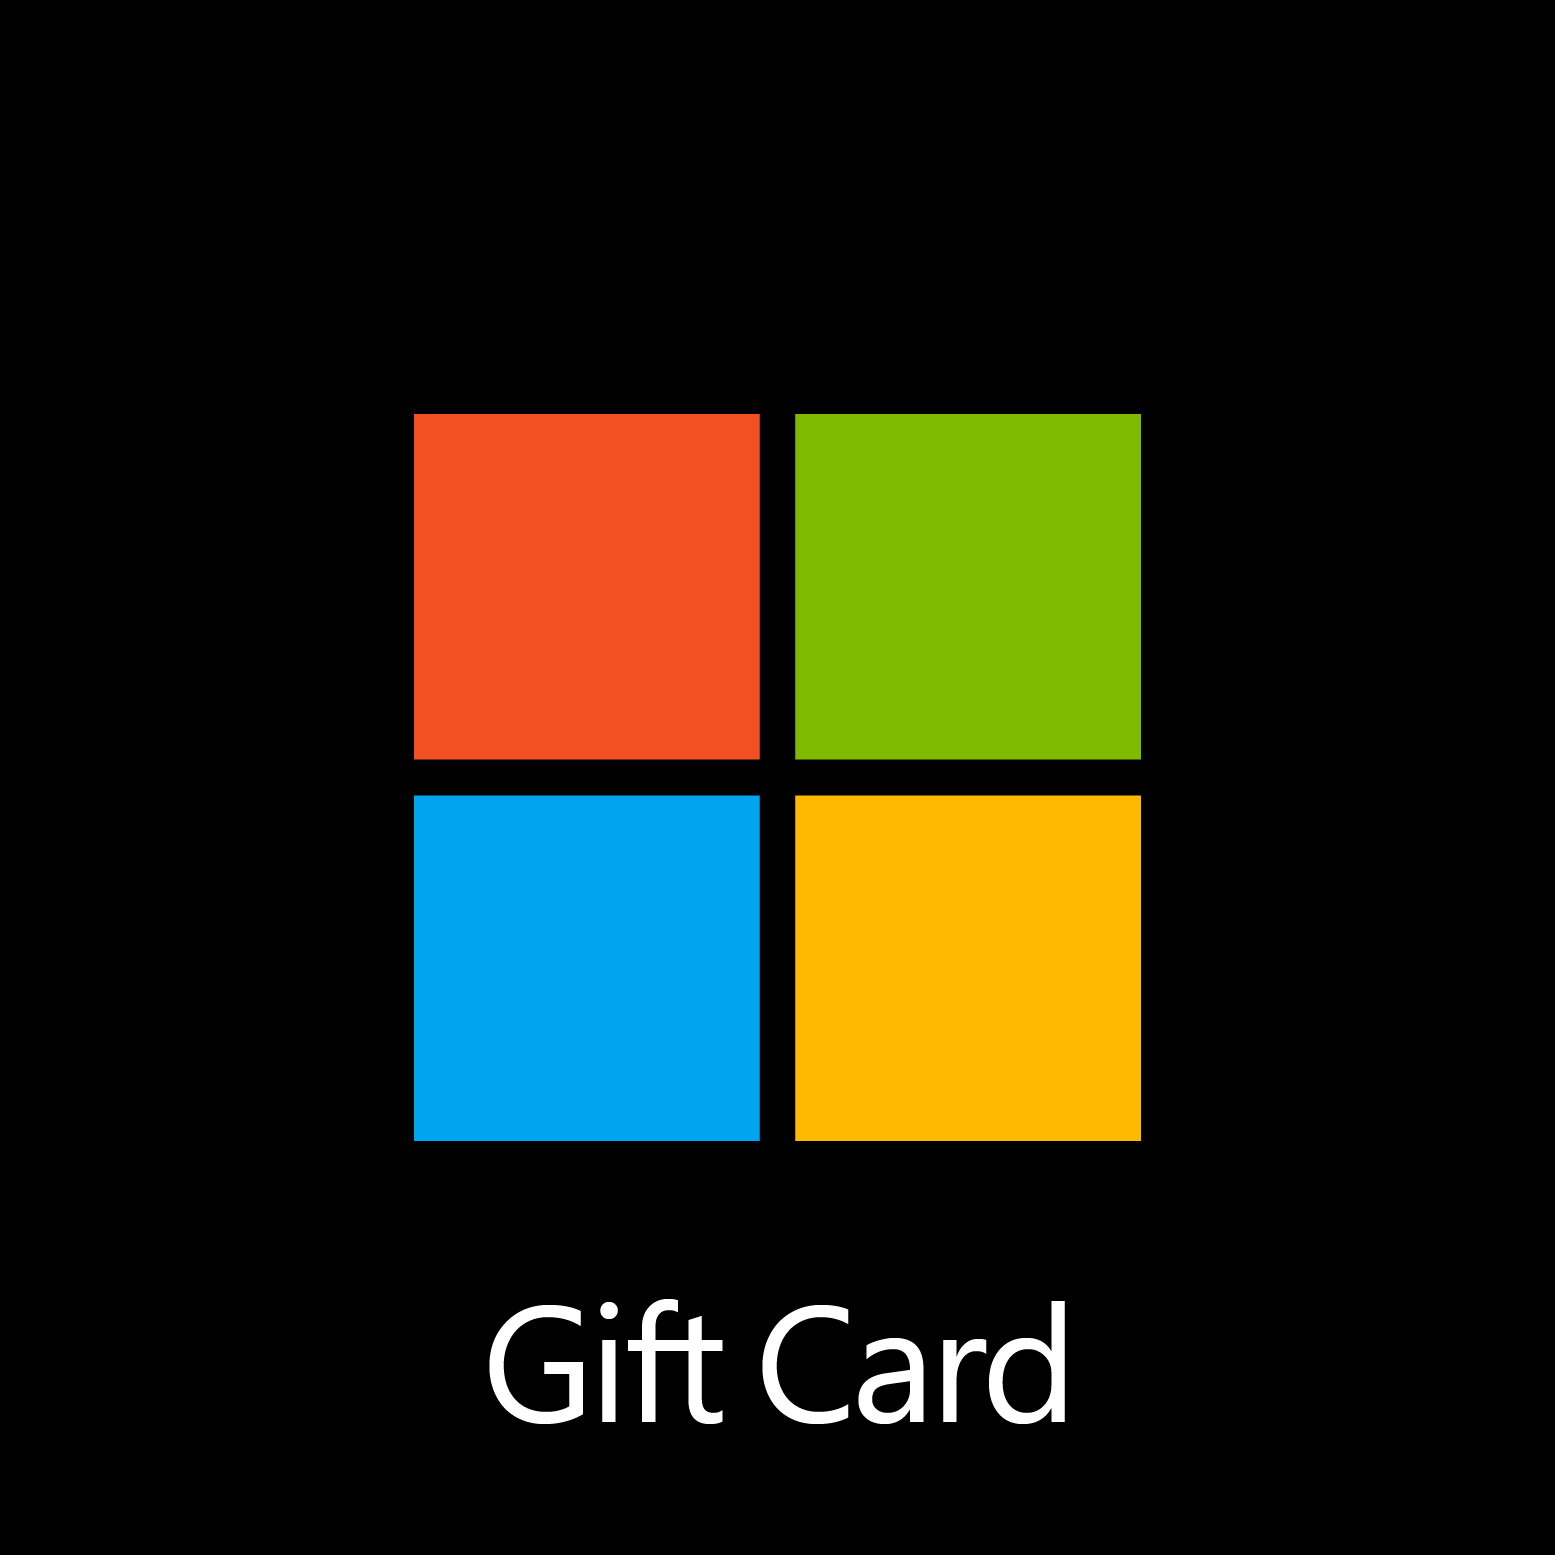 Microsoft Gift Card - Digital Code: Â£25.00